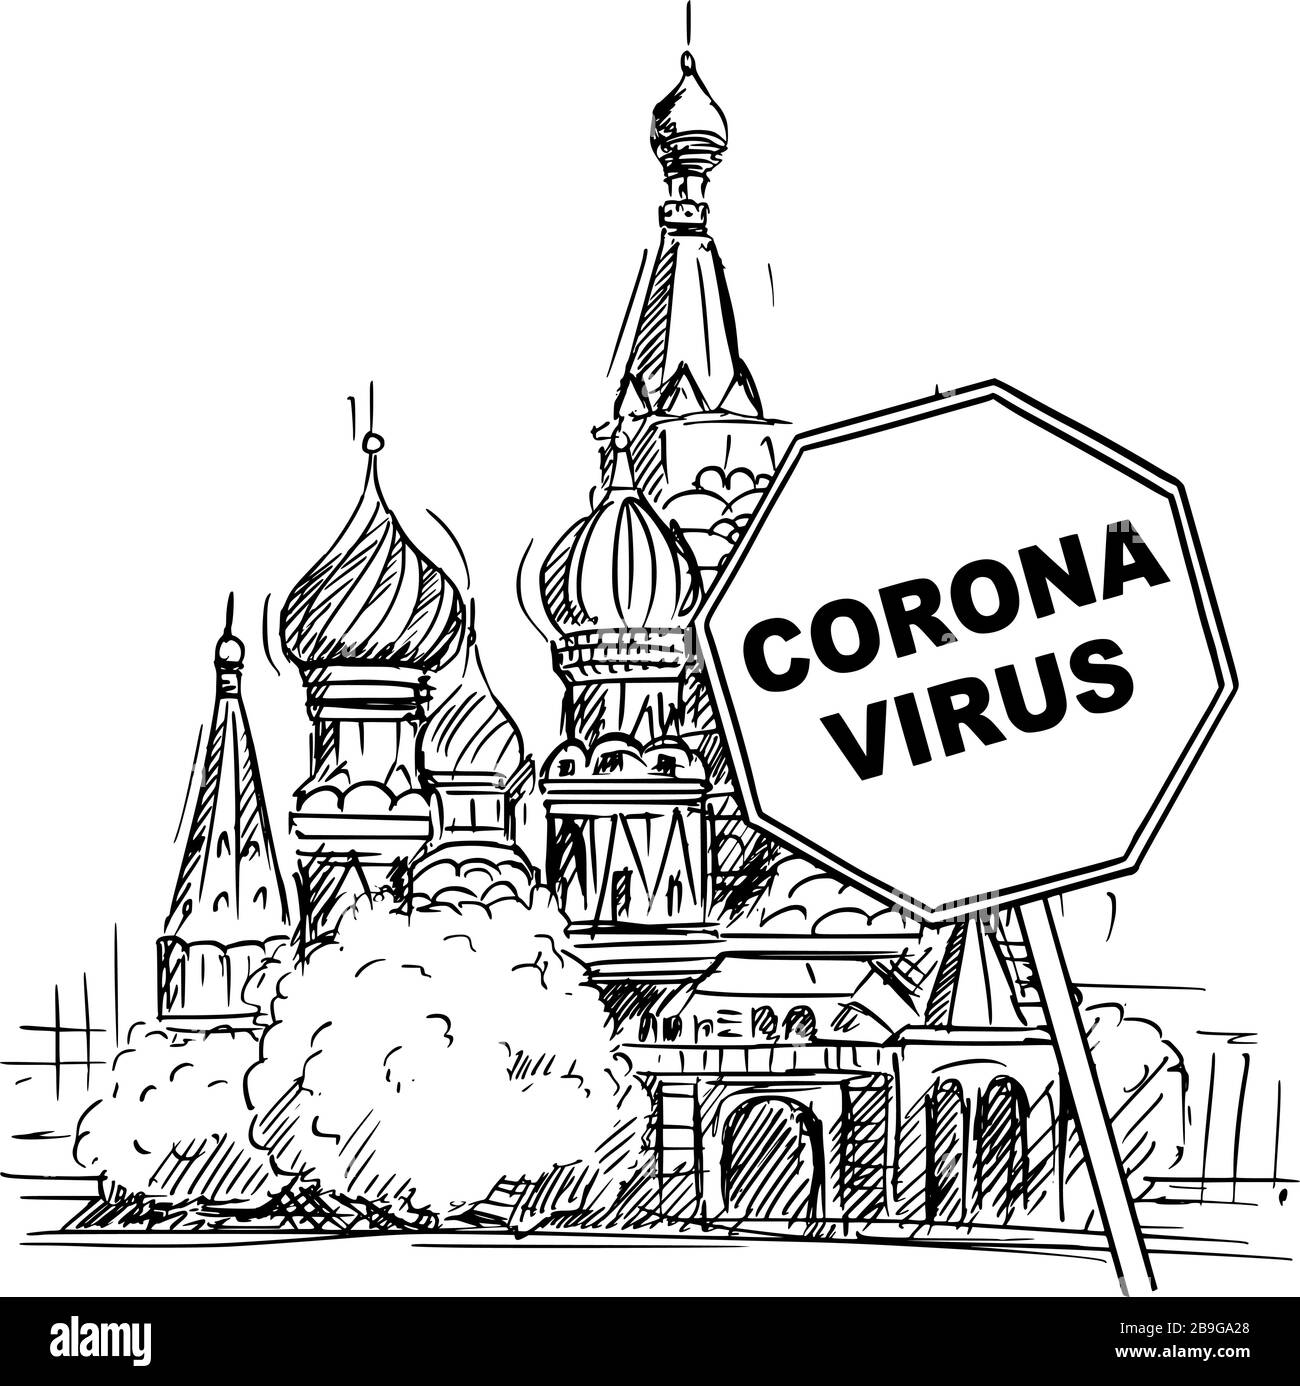 Cartoni animati vettoriali Sketchy ruvida illustrazione della Federazione Russa, Mosca, Cattedrale di San Basilio e Coronavirus covid-19 virus epidemia segnale di avvertimento. Illustrazione Vettoriale